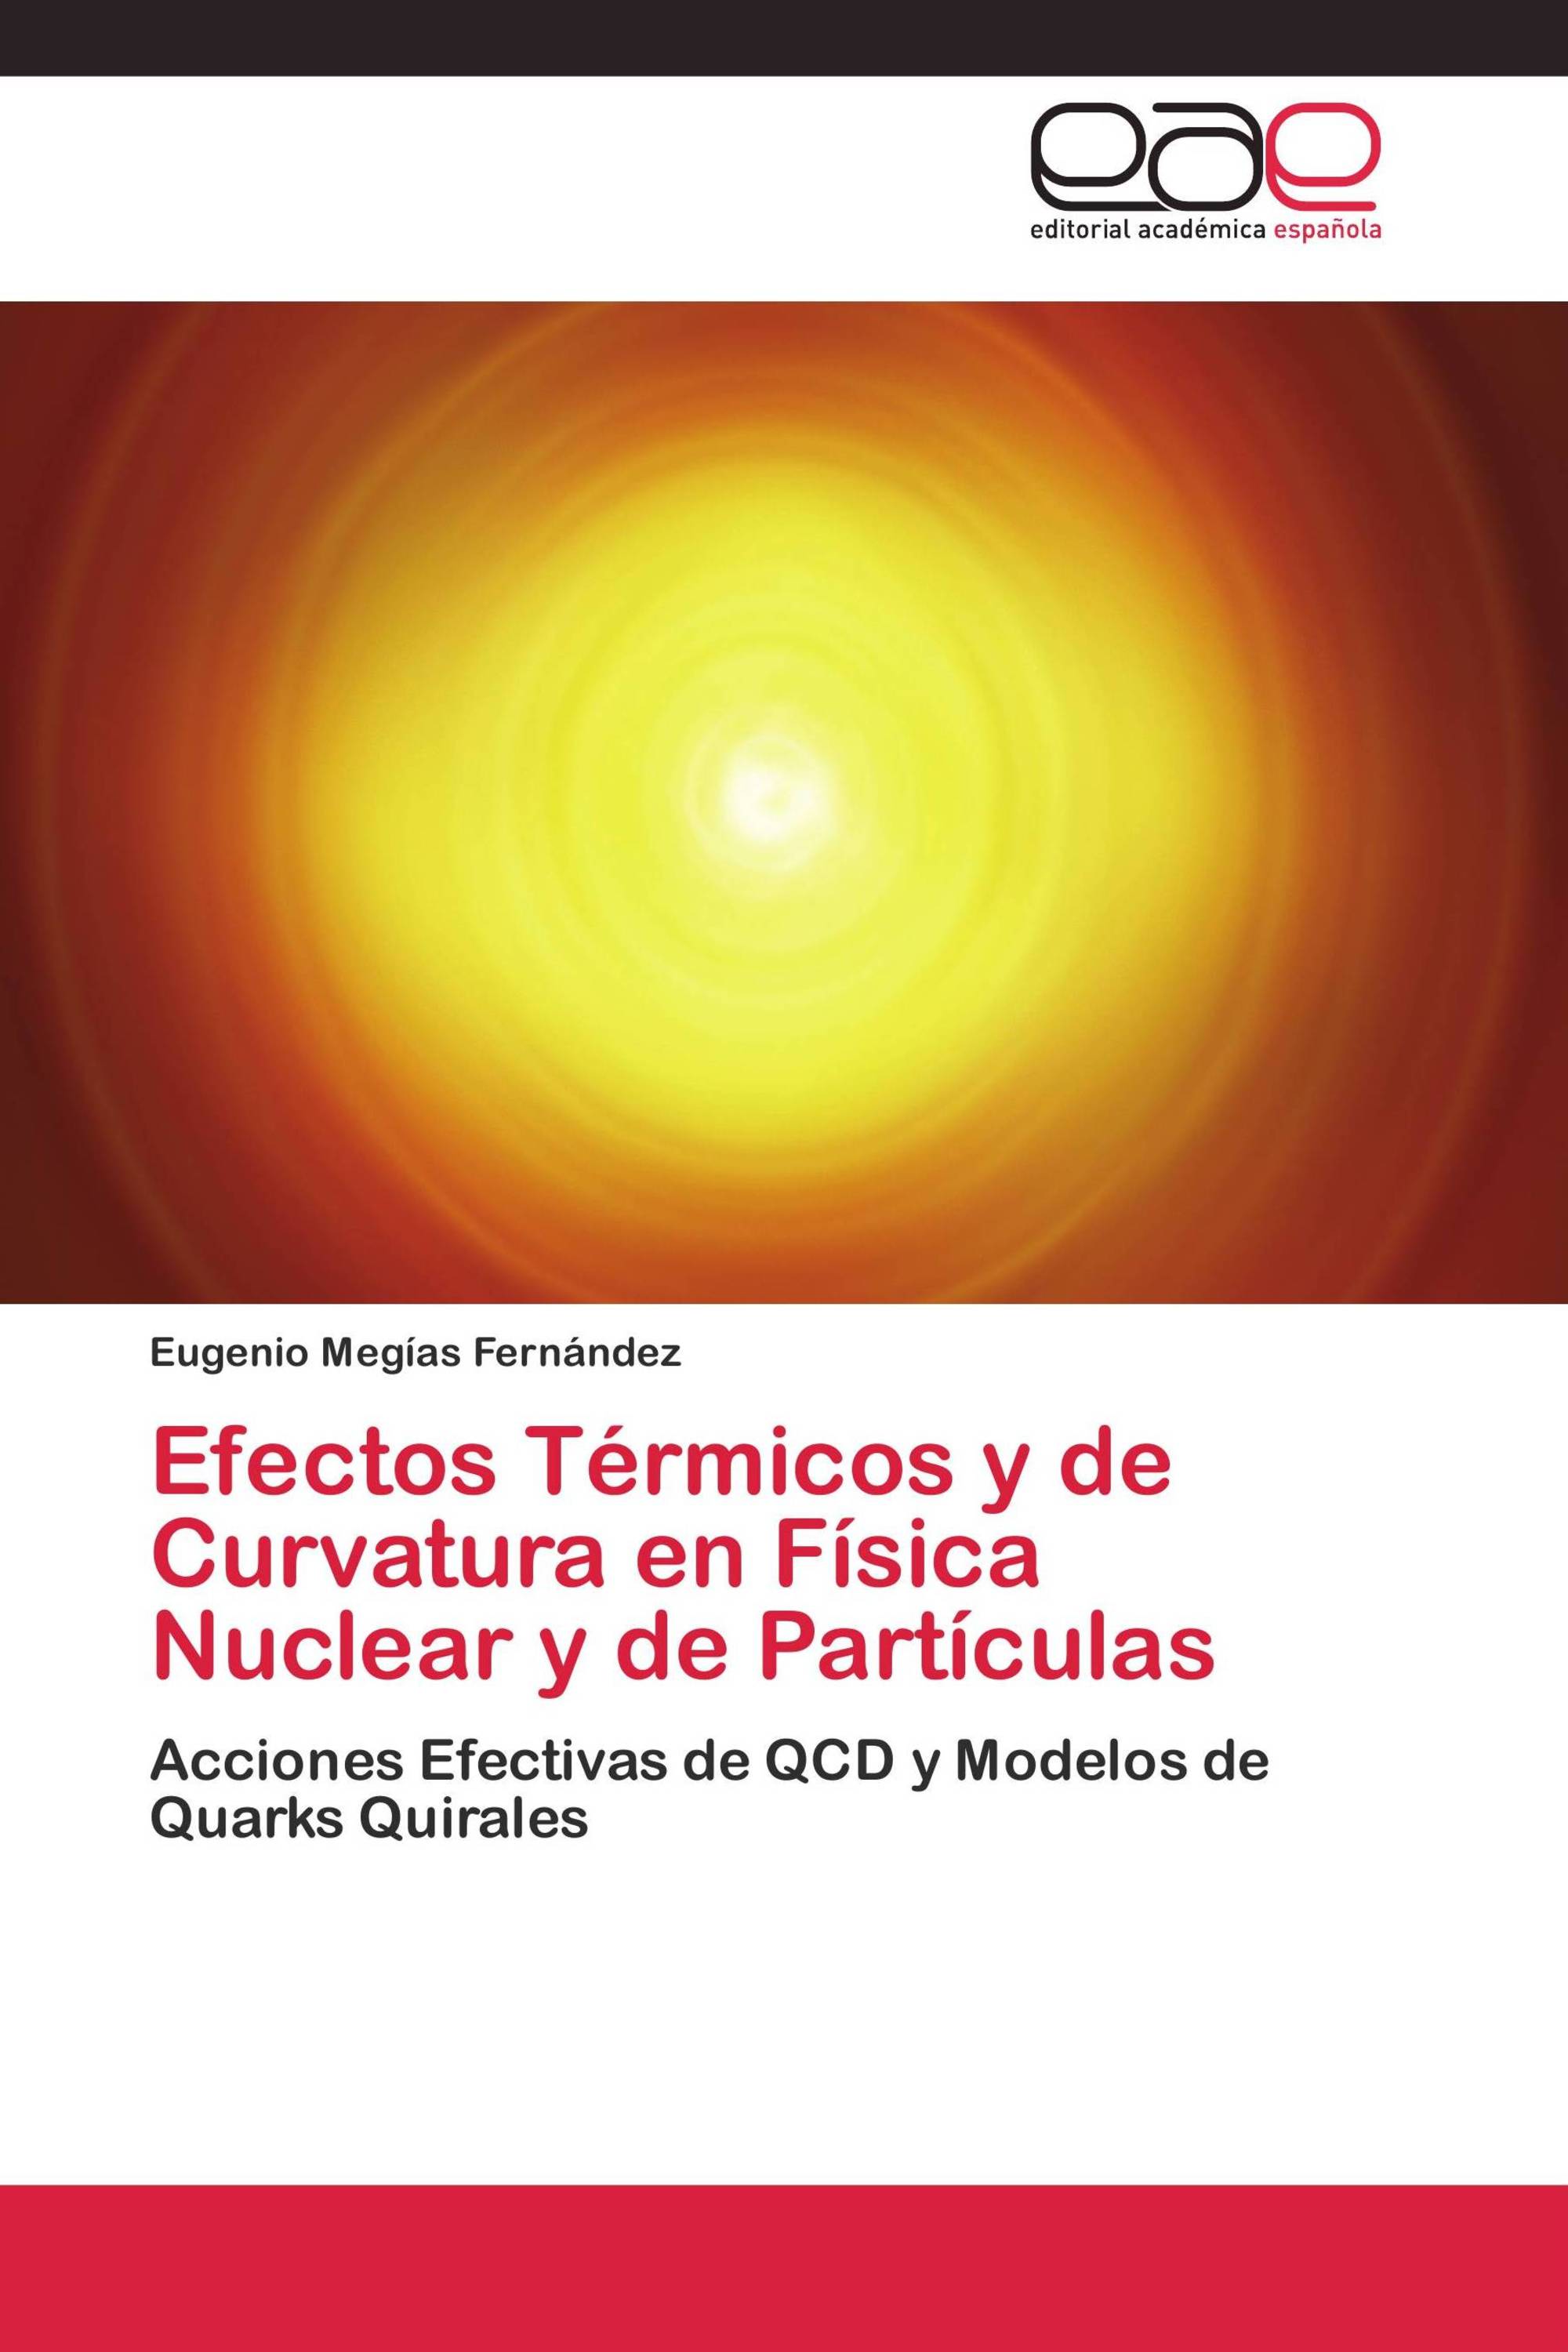 Efectos Térmicos y de Curvatura en Física Nuclear y de Partículas